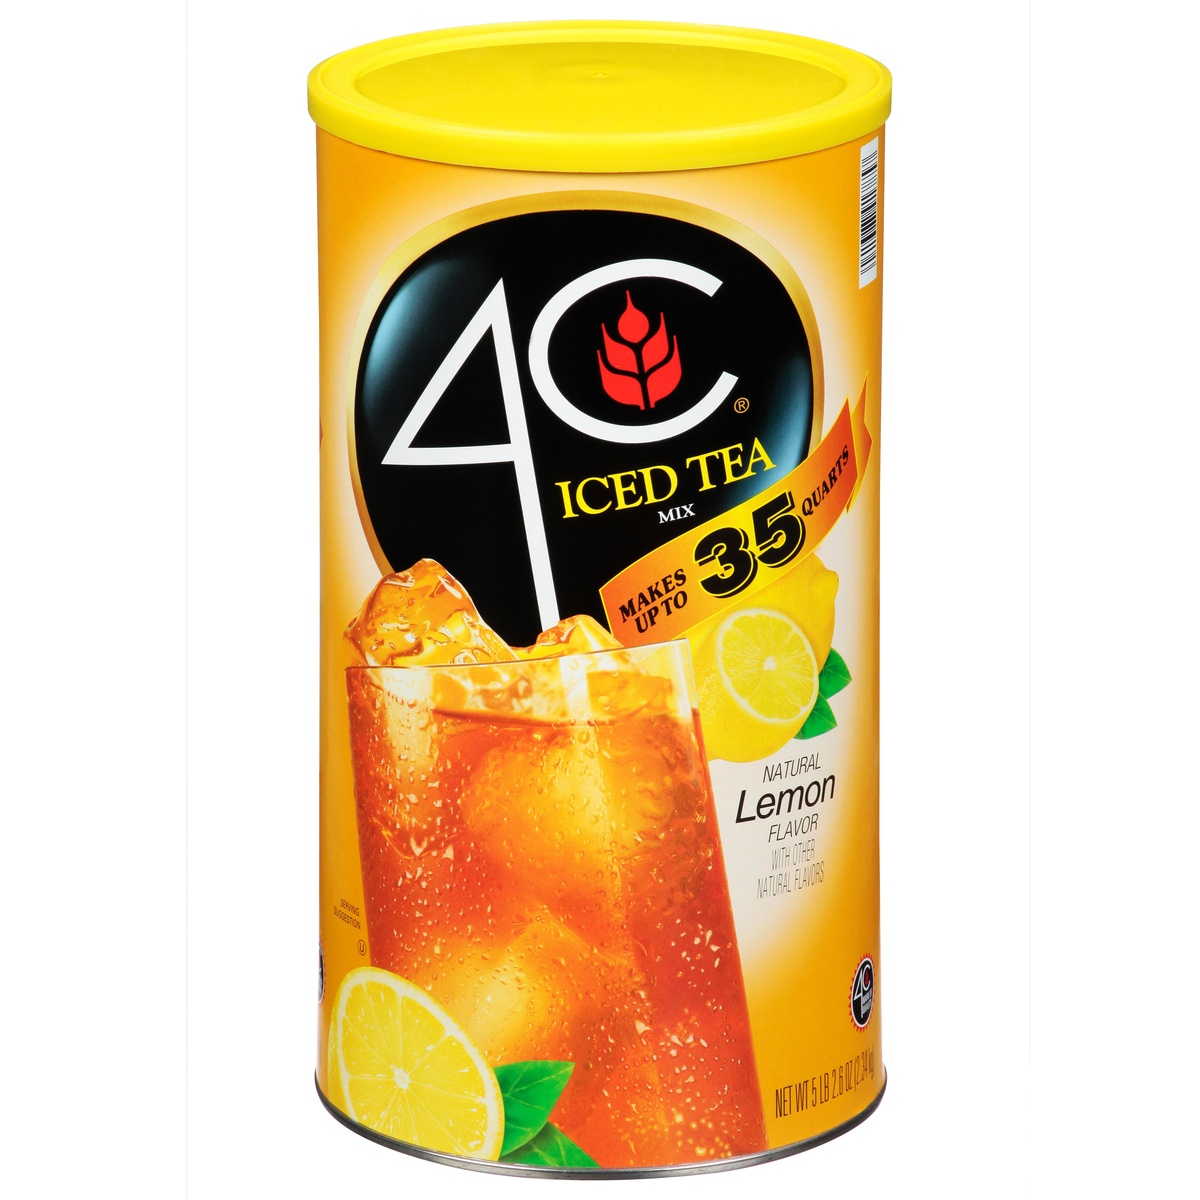 slide 1 of 1, 4C Natural Lemon Flavor Iced Tea Mix, 87 oz